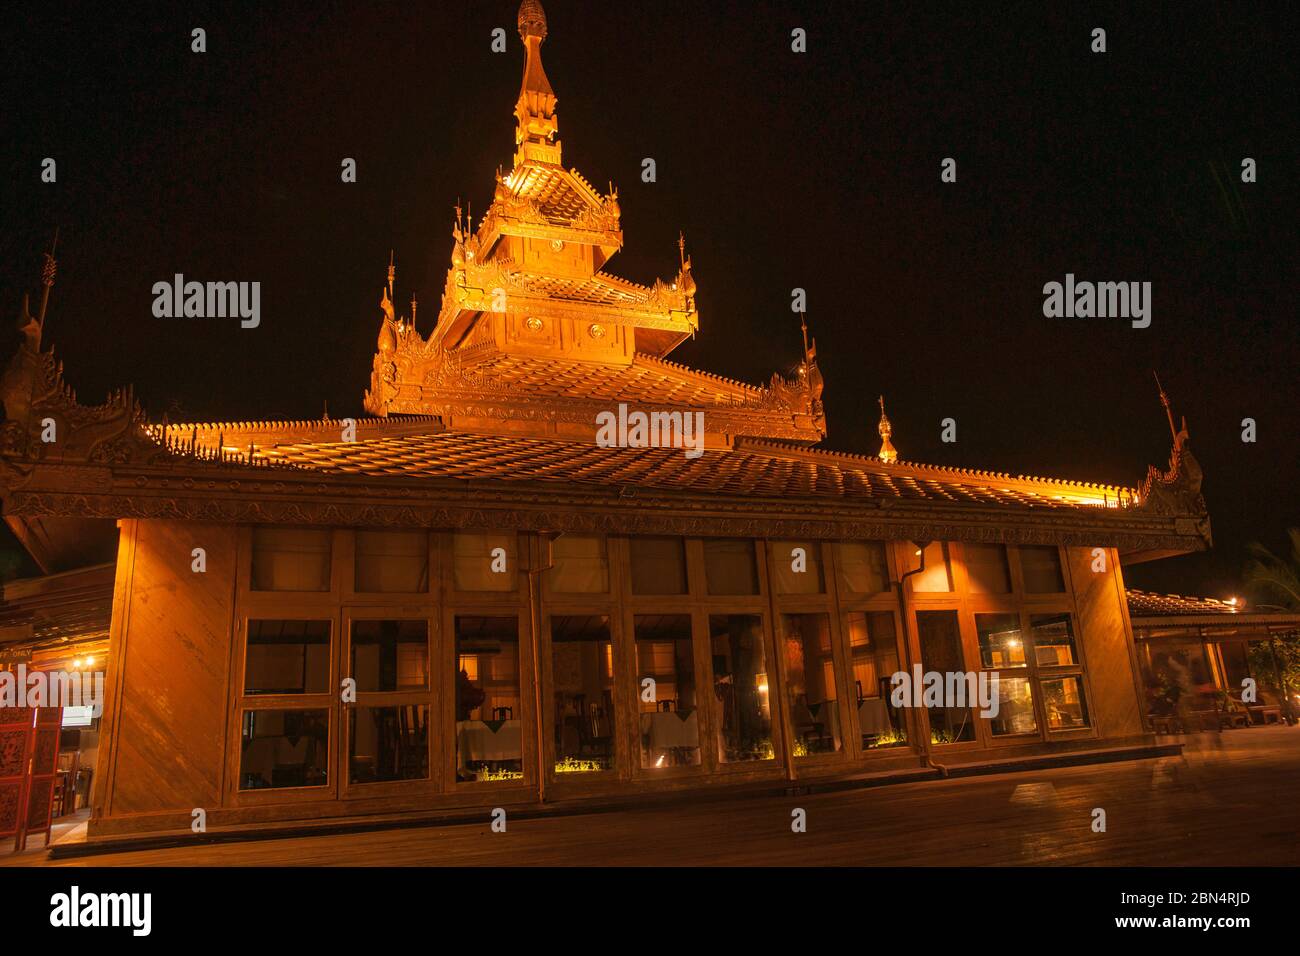 Asiatische Architektur bei Nacht, mit traditionellem Stil und Funktionen beleuchtet gegen dunklen Himmel in Bagan, Myanmar. Stockfoto